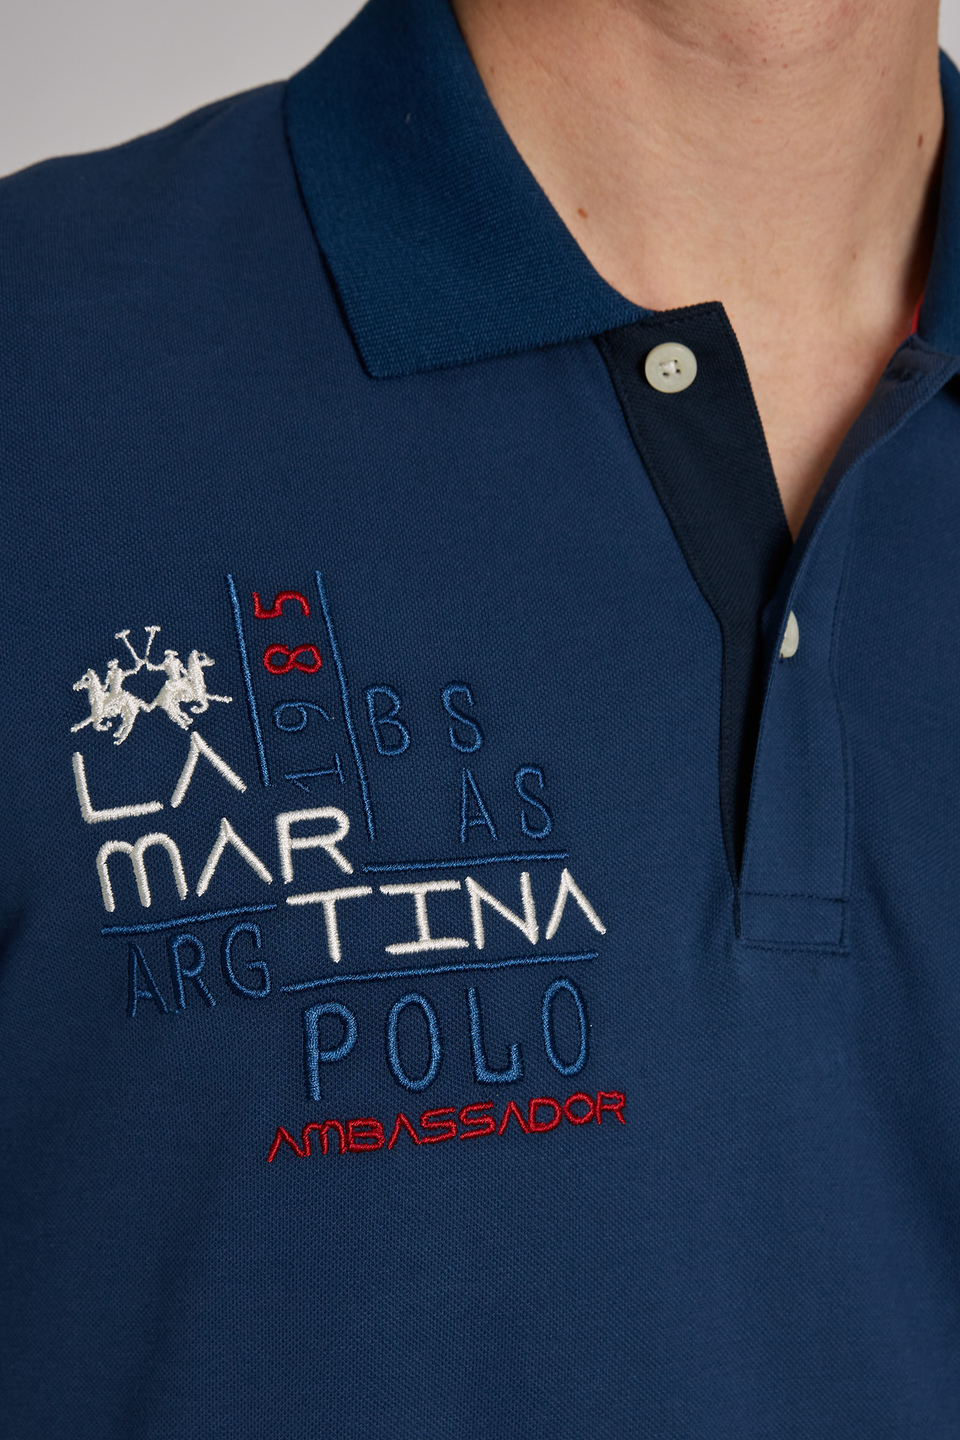 Polo homme en coton stretch à manches courtes et coupe classique - La Martina - Official Online Shop